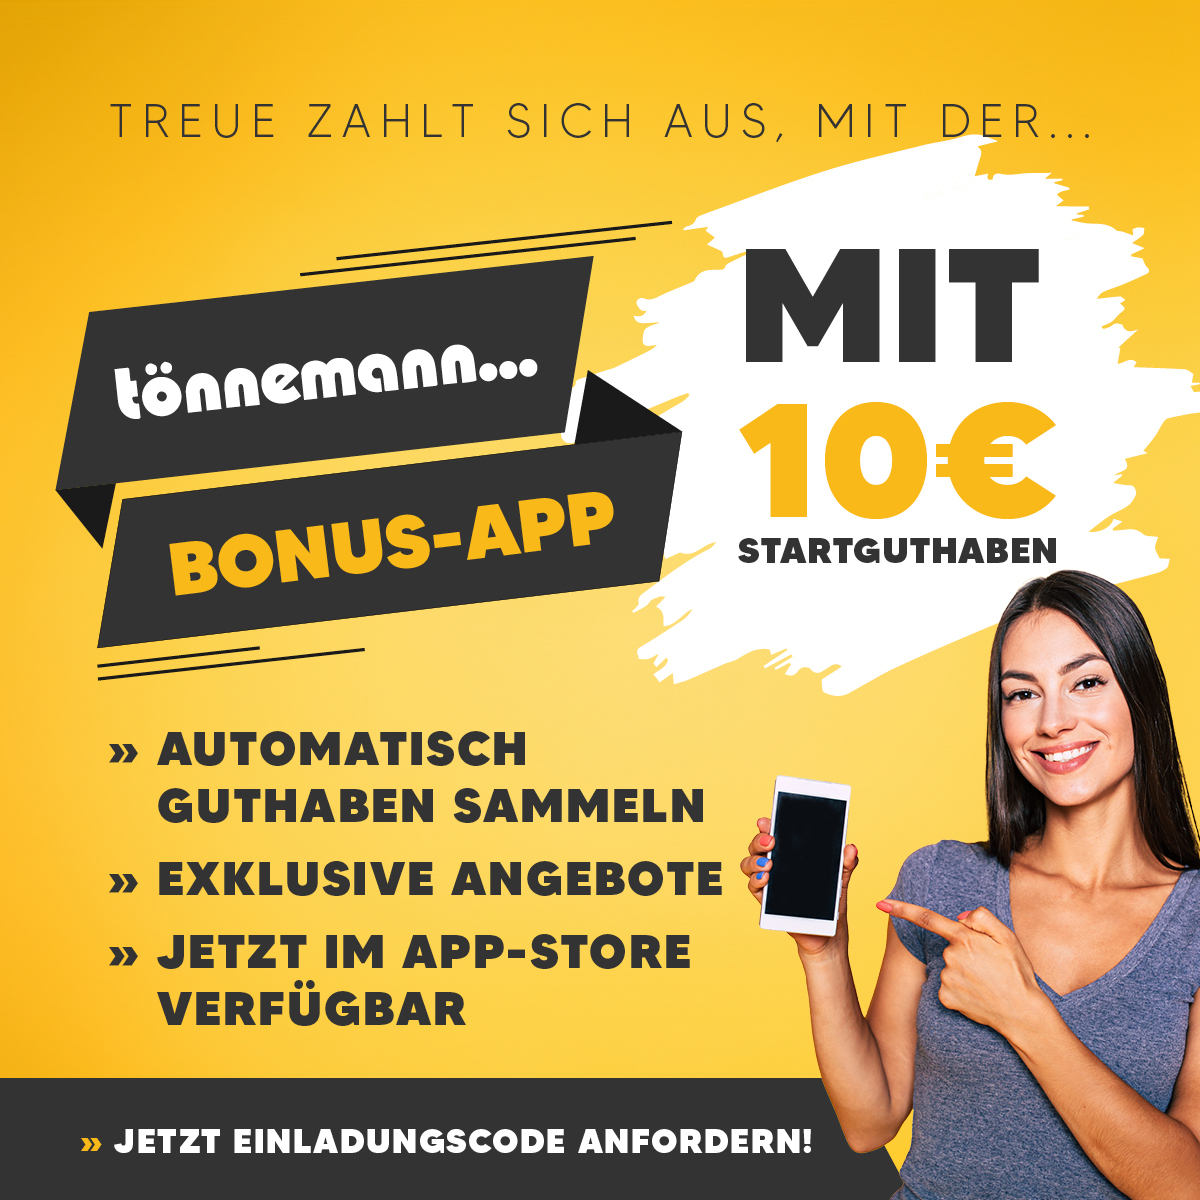 Autohaus Tönnemann Bonus App in Coesfeld Treuepunkte - BIld für Slider - Frau mit Smartphone